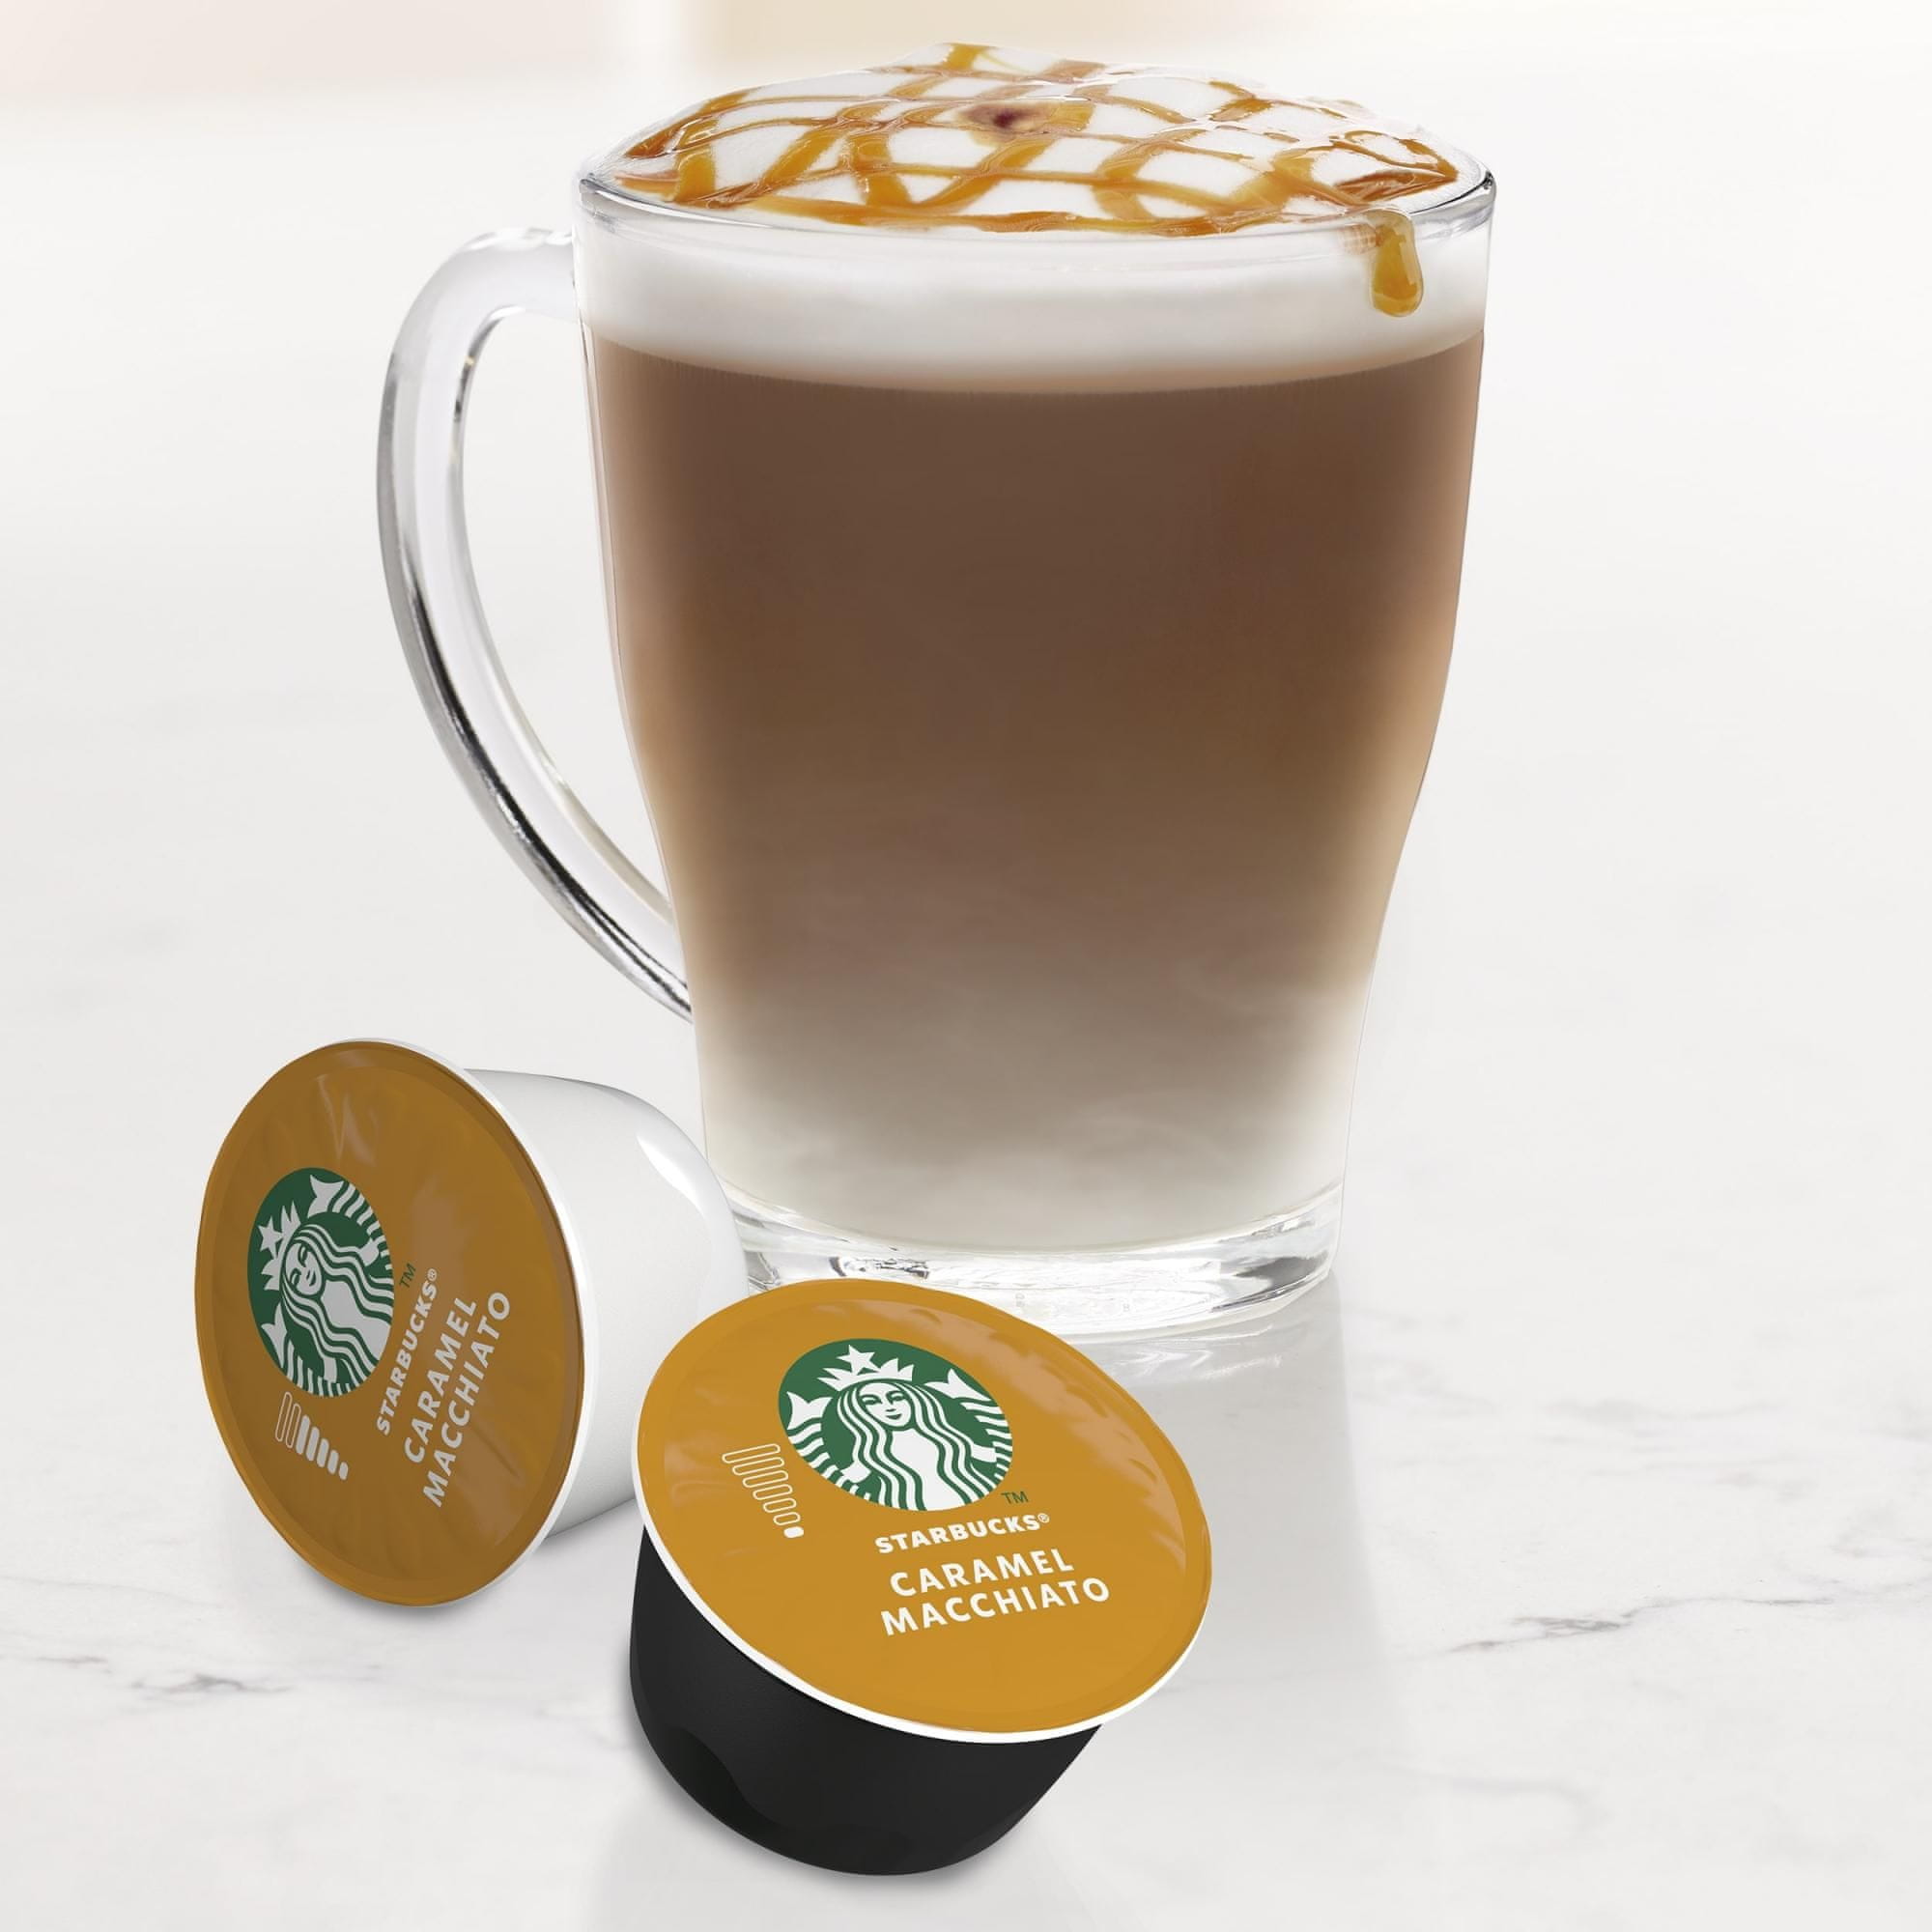 Starbucks by Nescafé Dolce Gusto Latte Macchiato